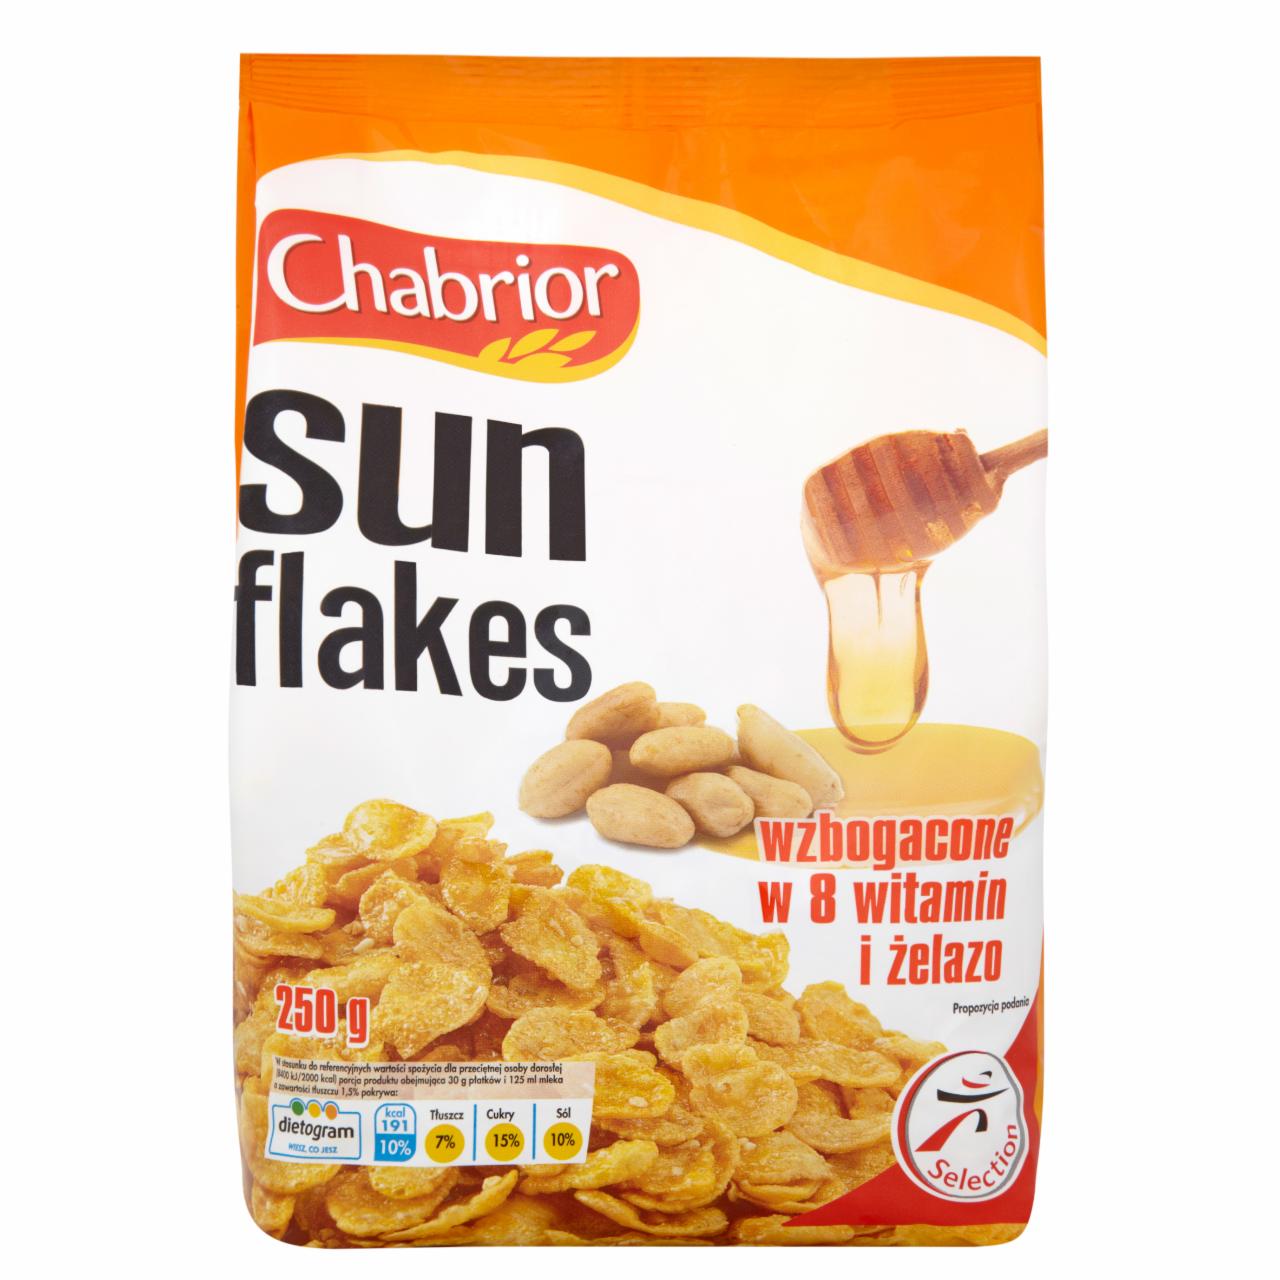 Zdjęcia - Chabrior Sun Flakes Płatki kukurydziane z miodem i orzeszkami wzbogacone w 8 witamin i żelazo 250 g